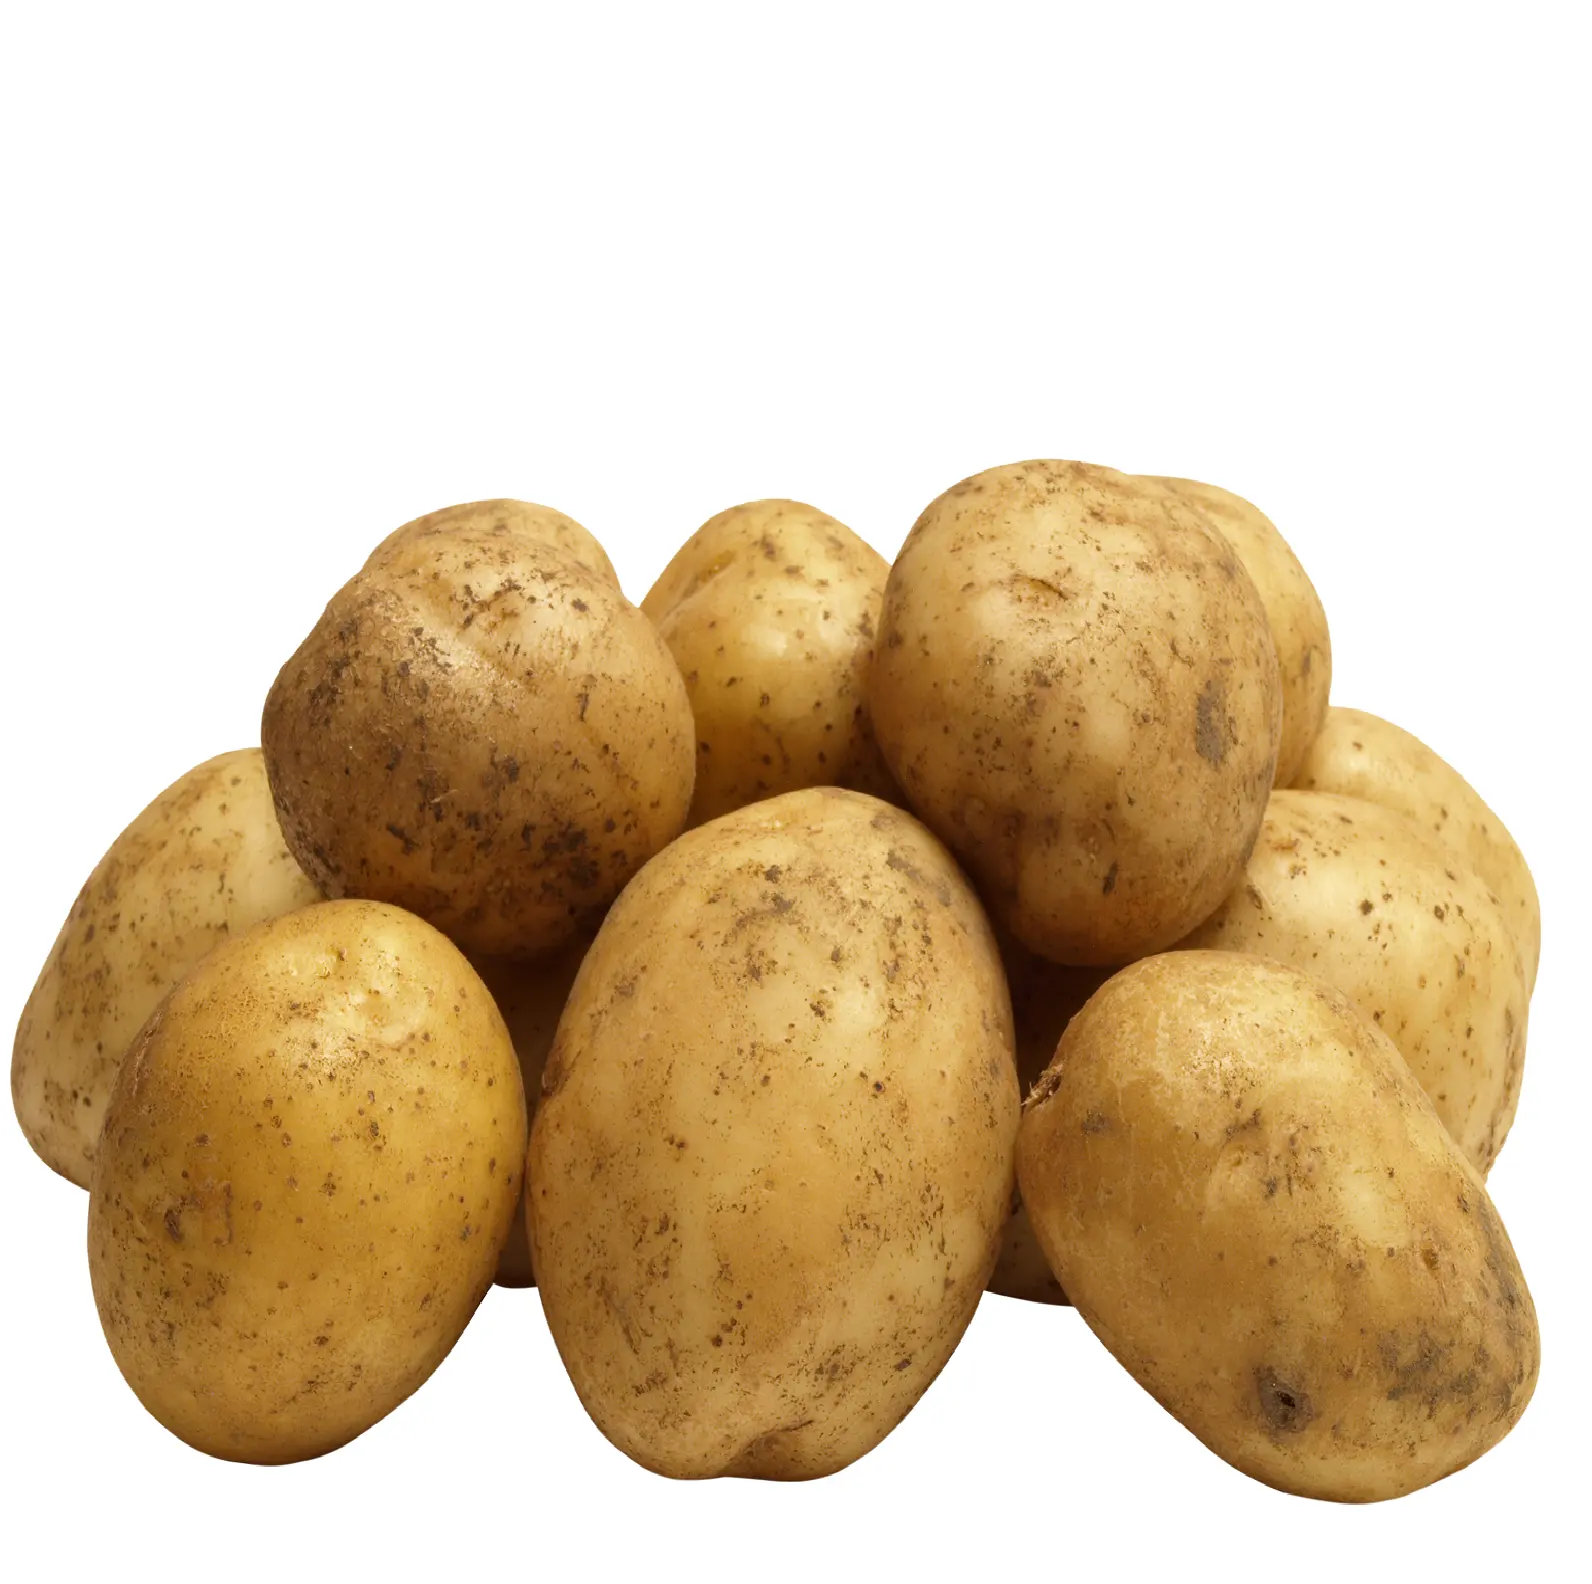 Kartoffel frisch Bio-Kartoffeln hohe Qualität günstigen Preis profession elle Export Großhändler Potato potatofresh aus Pakistan